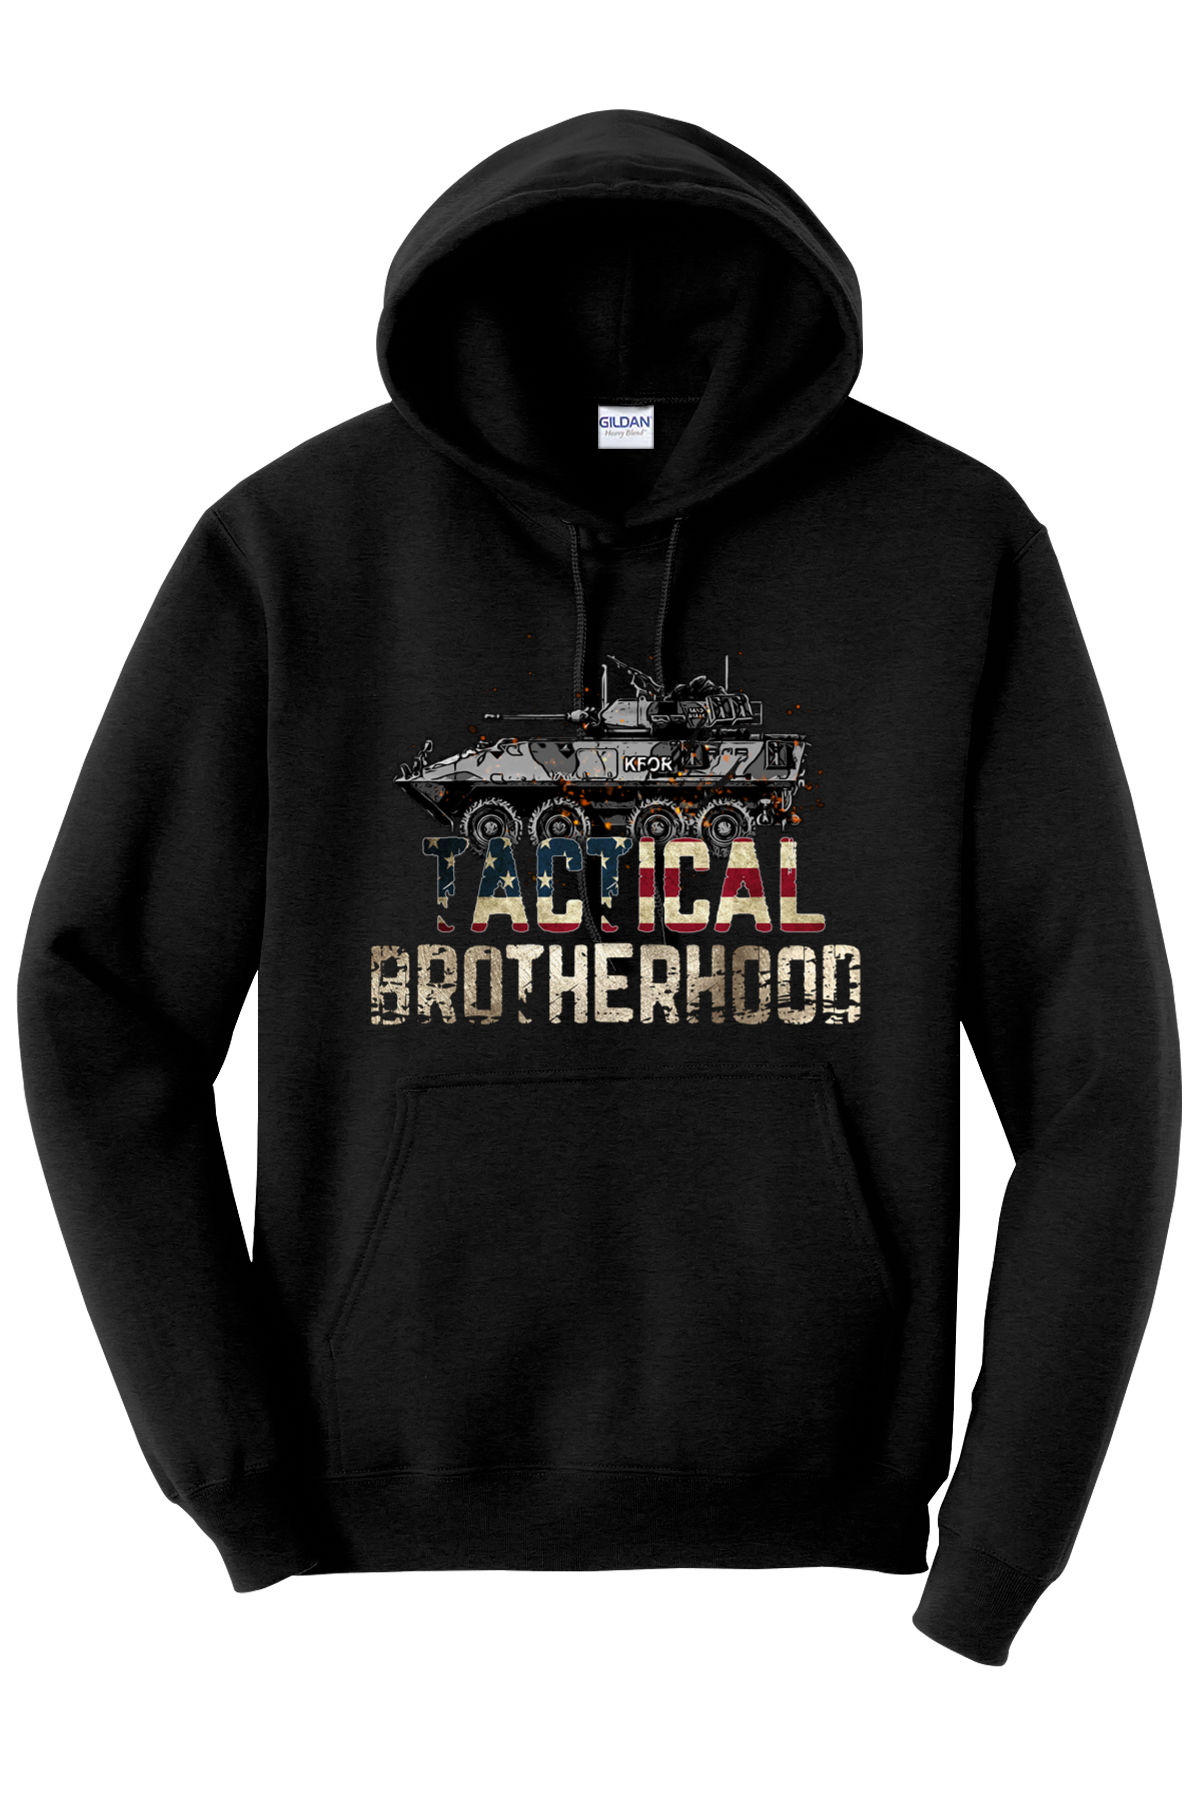 LAV - Tactical Brotherhood Hoodie